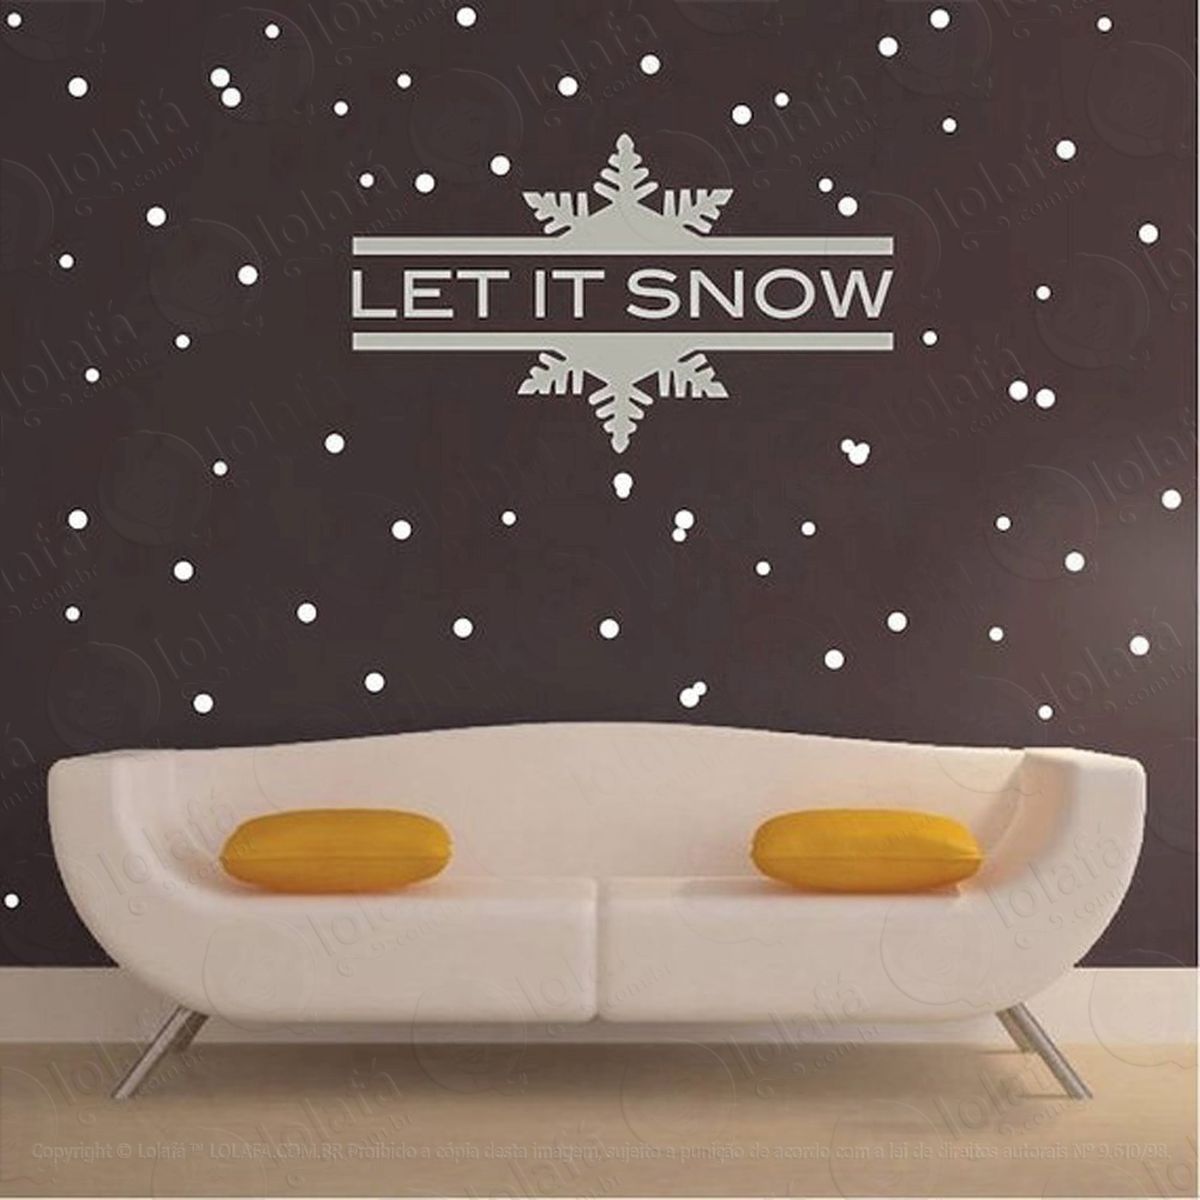 let is snow adesivo de natal para vitrine, parede, porta de vidro - decoração natalina mod:2